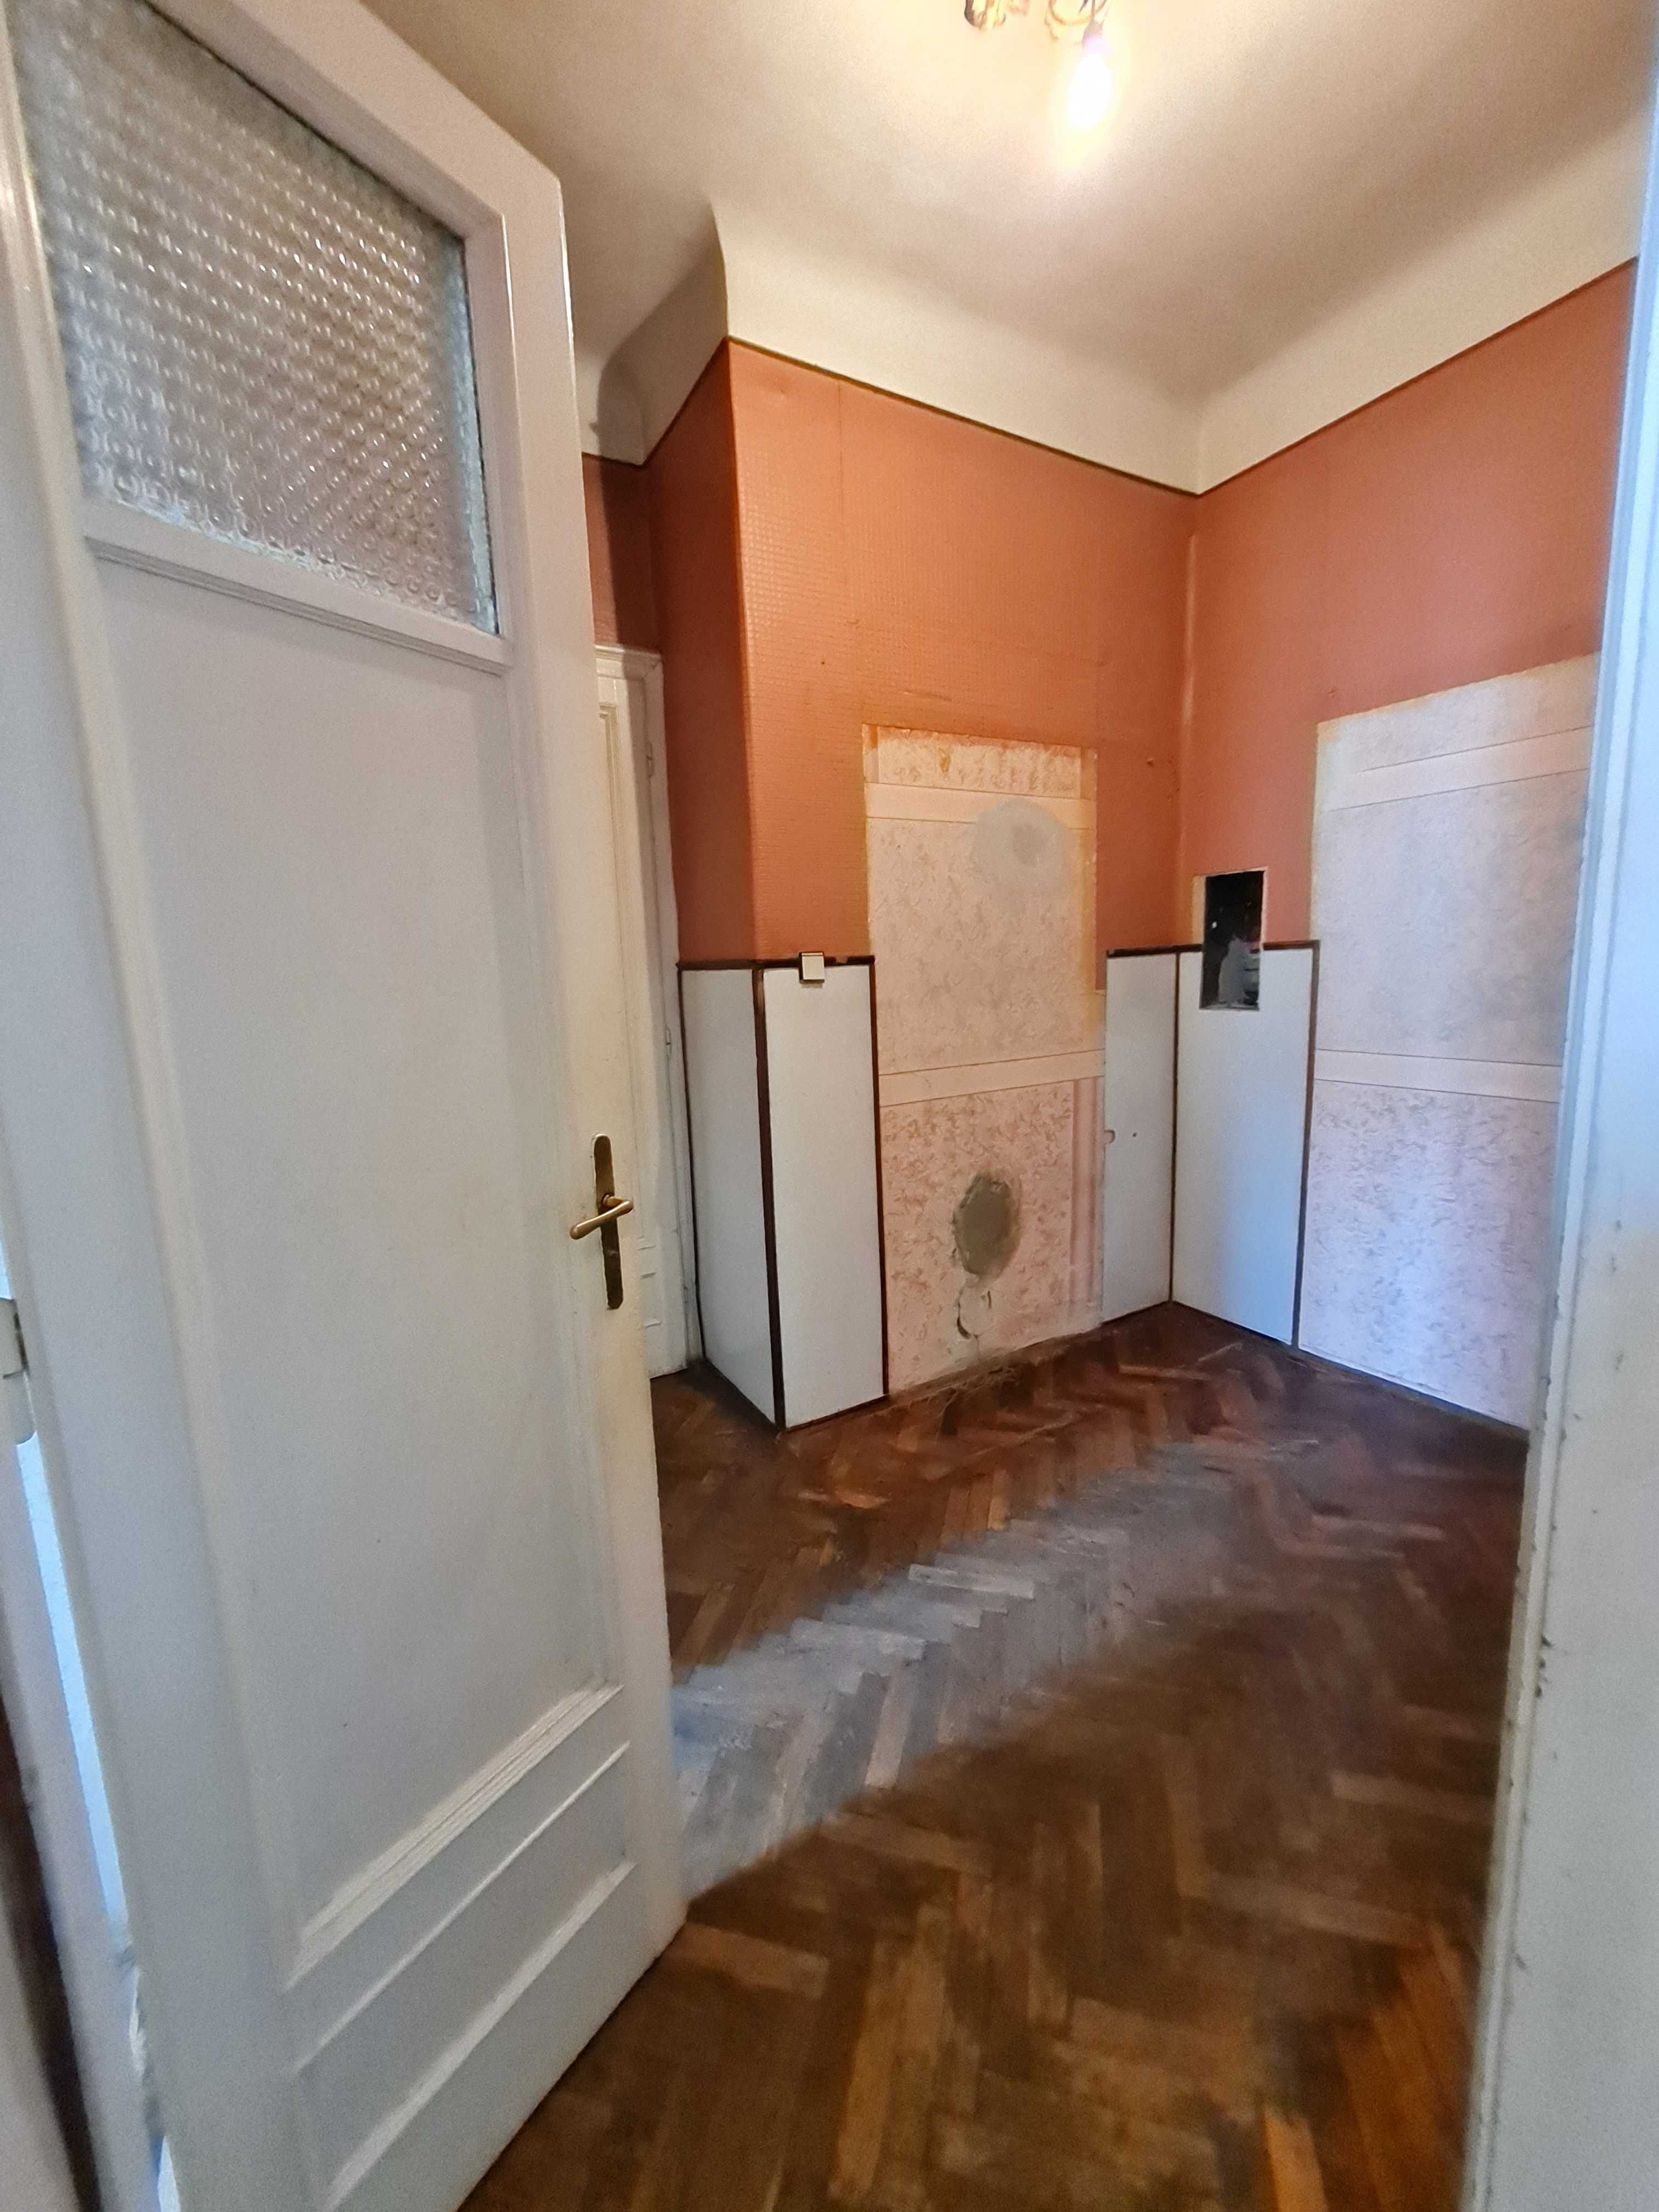 Продається 3-кімнатна квартира (Центр ) вулиця Шептицького.